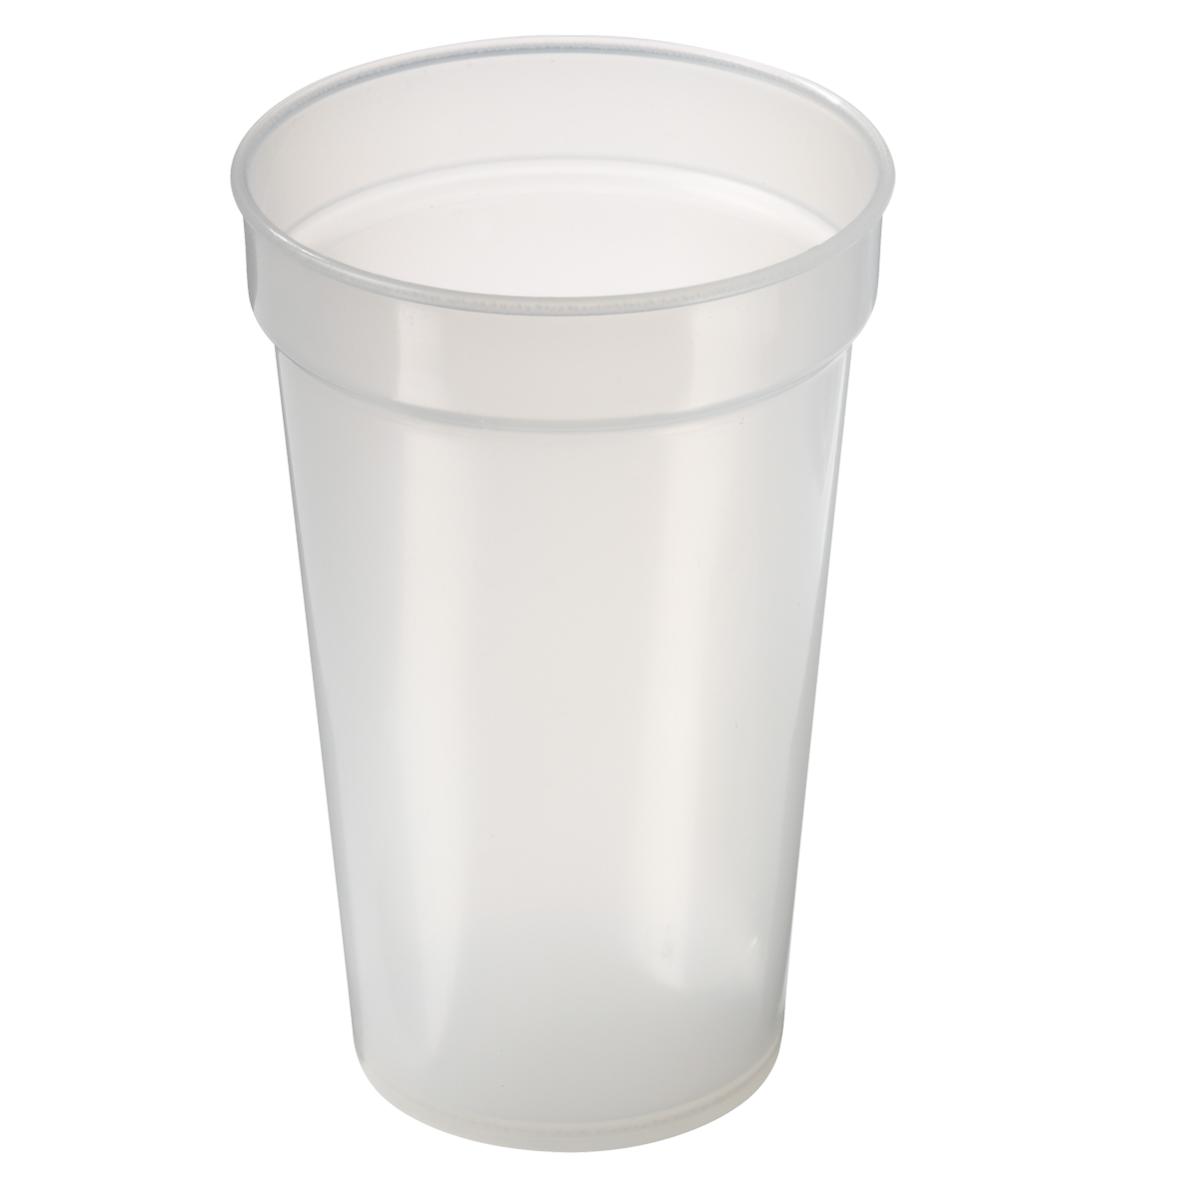 Bicchiere di plastica impilabile, infrangibile e riutilizzabile con segno di livello di riempimento - Chianciano Terme